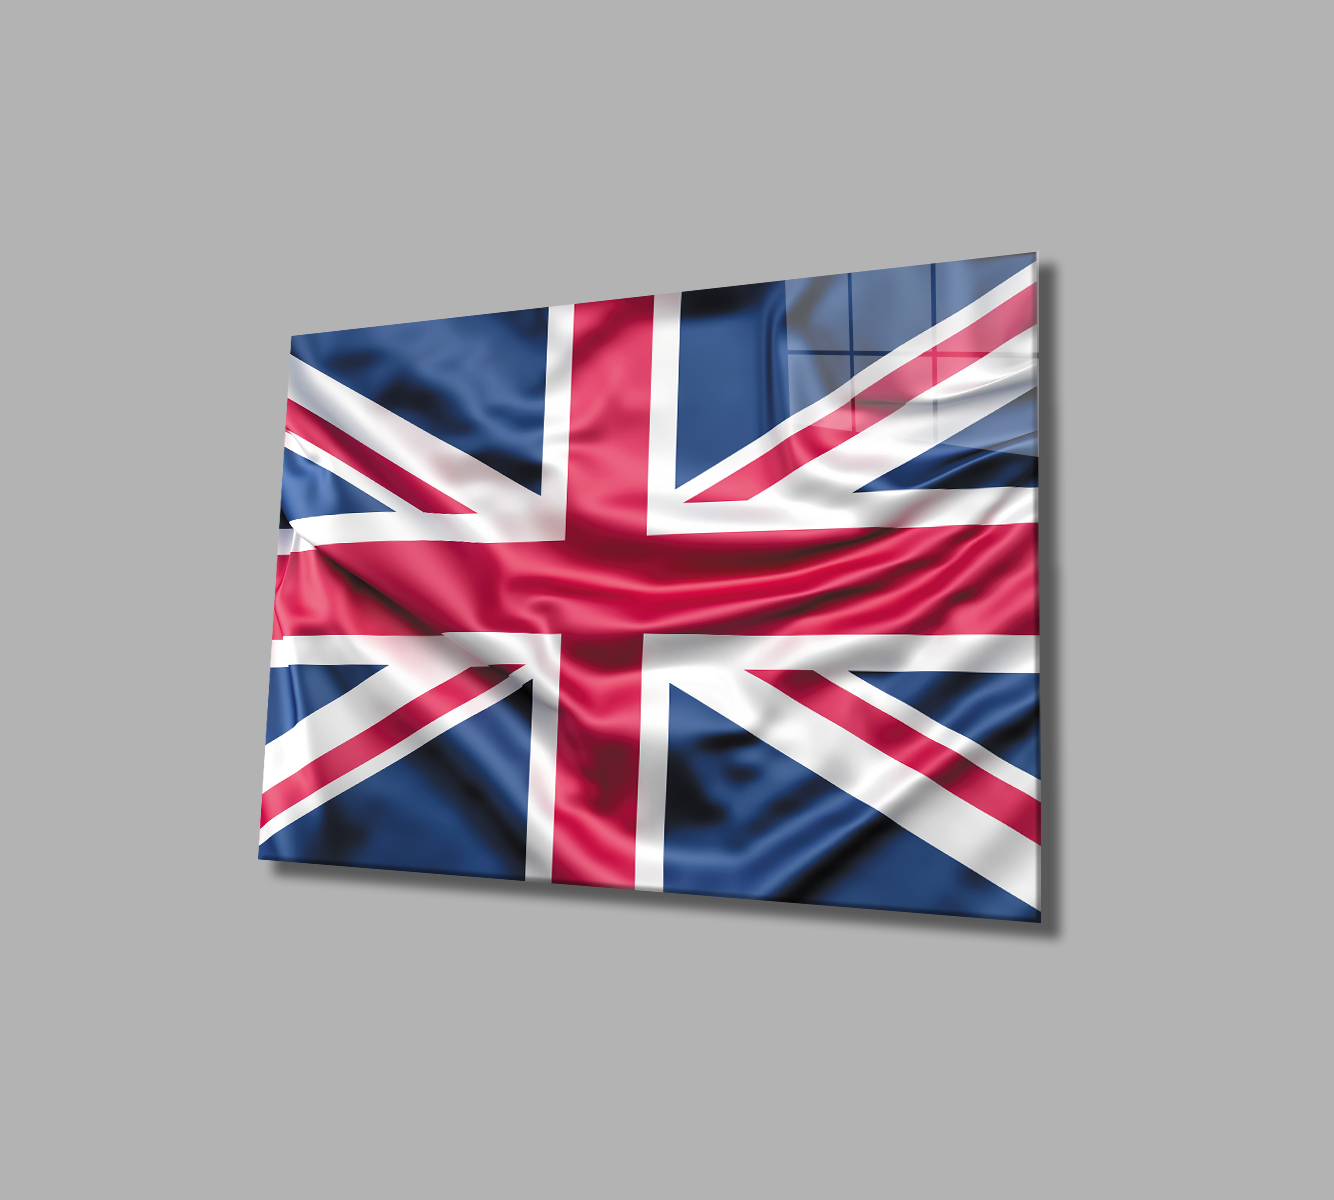 Birleşik Krallık Bayrağı Cam Tablo  4mm Dayanıklı Temperli Cam,United Kingdom Flag Glass Wall Art